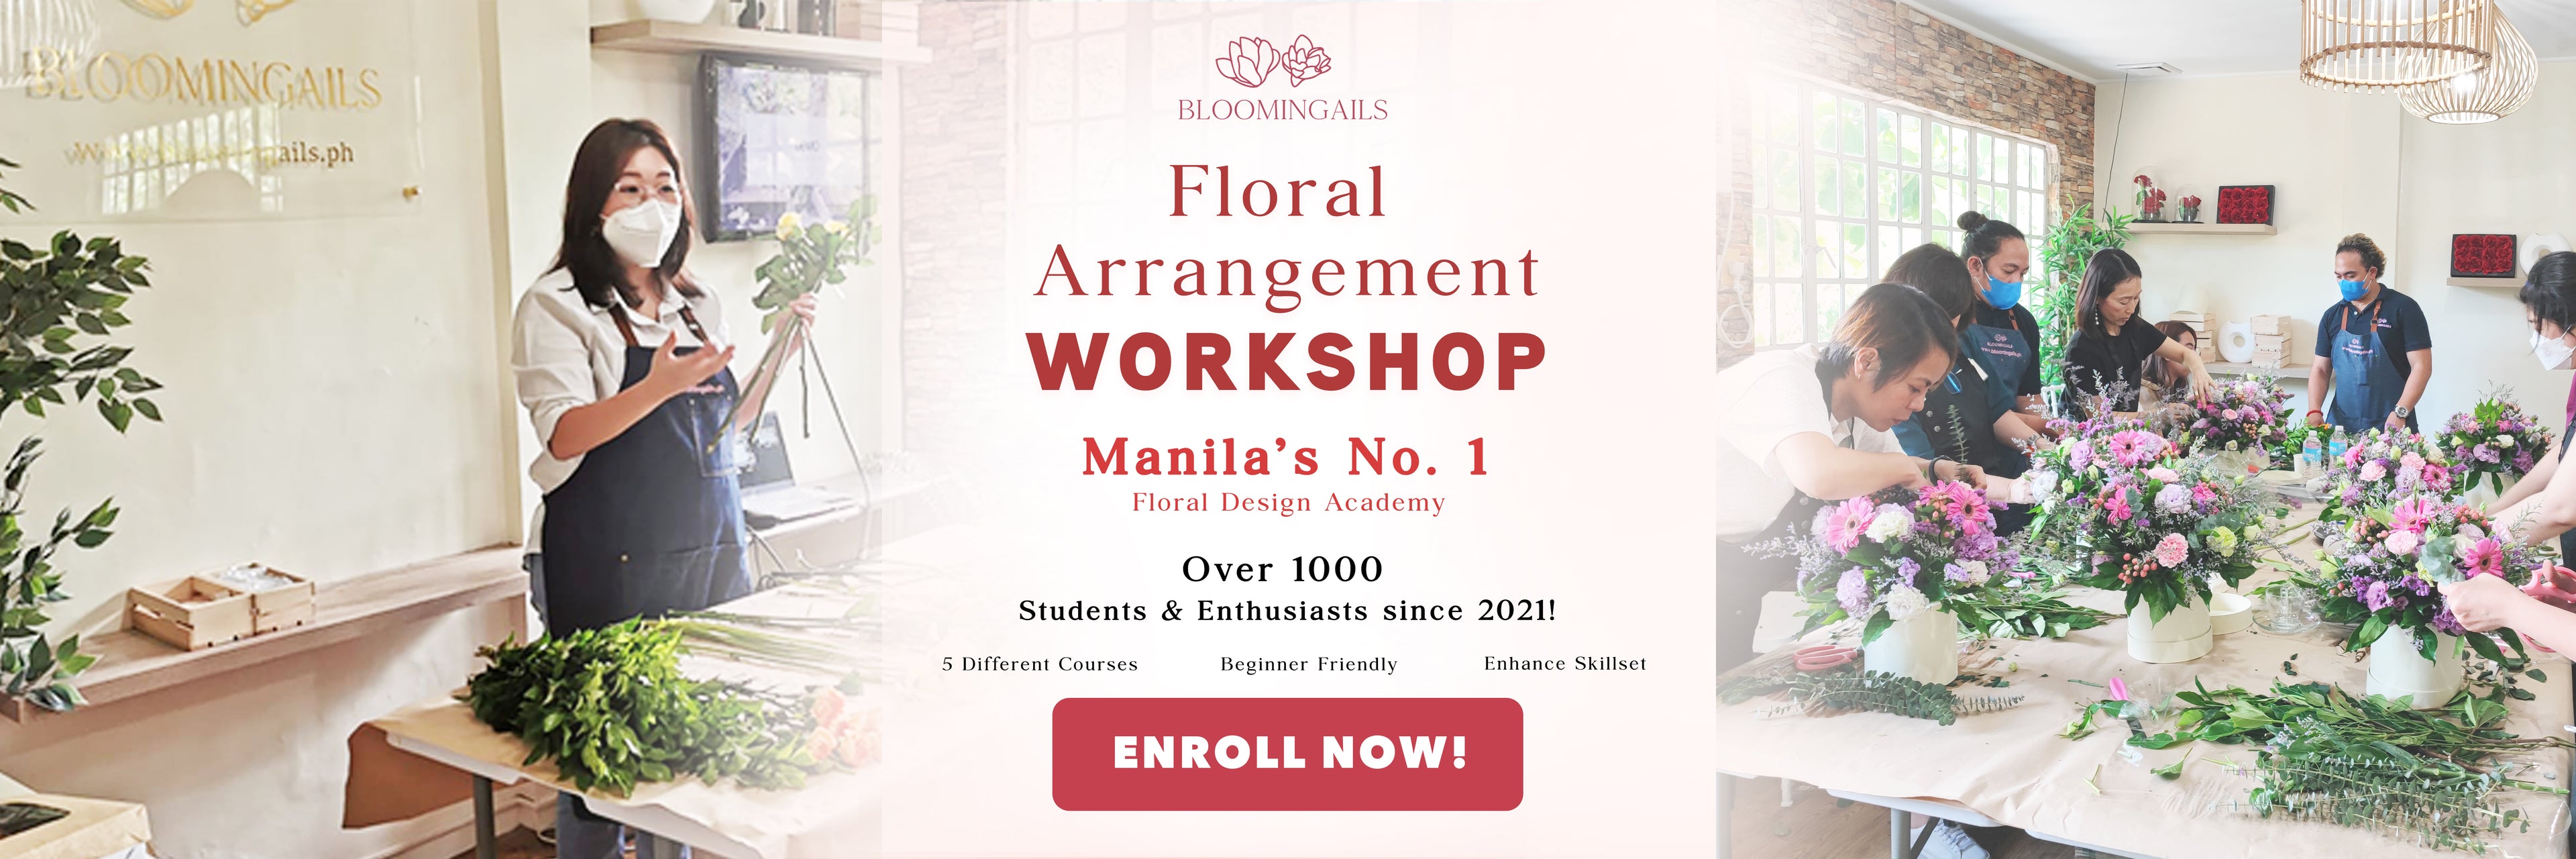 Floral Arrangement Workshop Banner